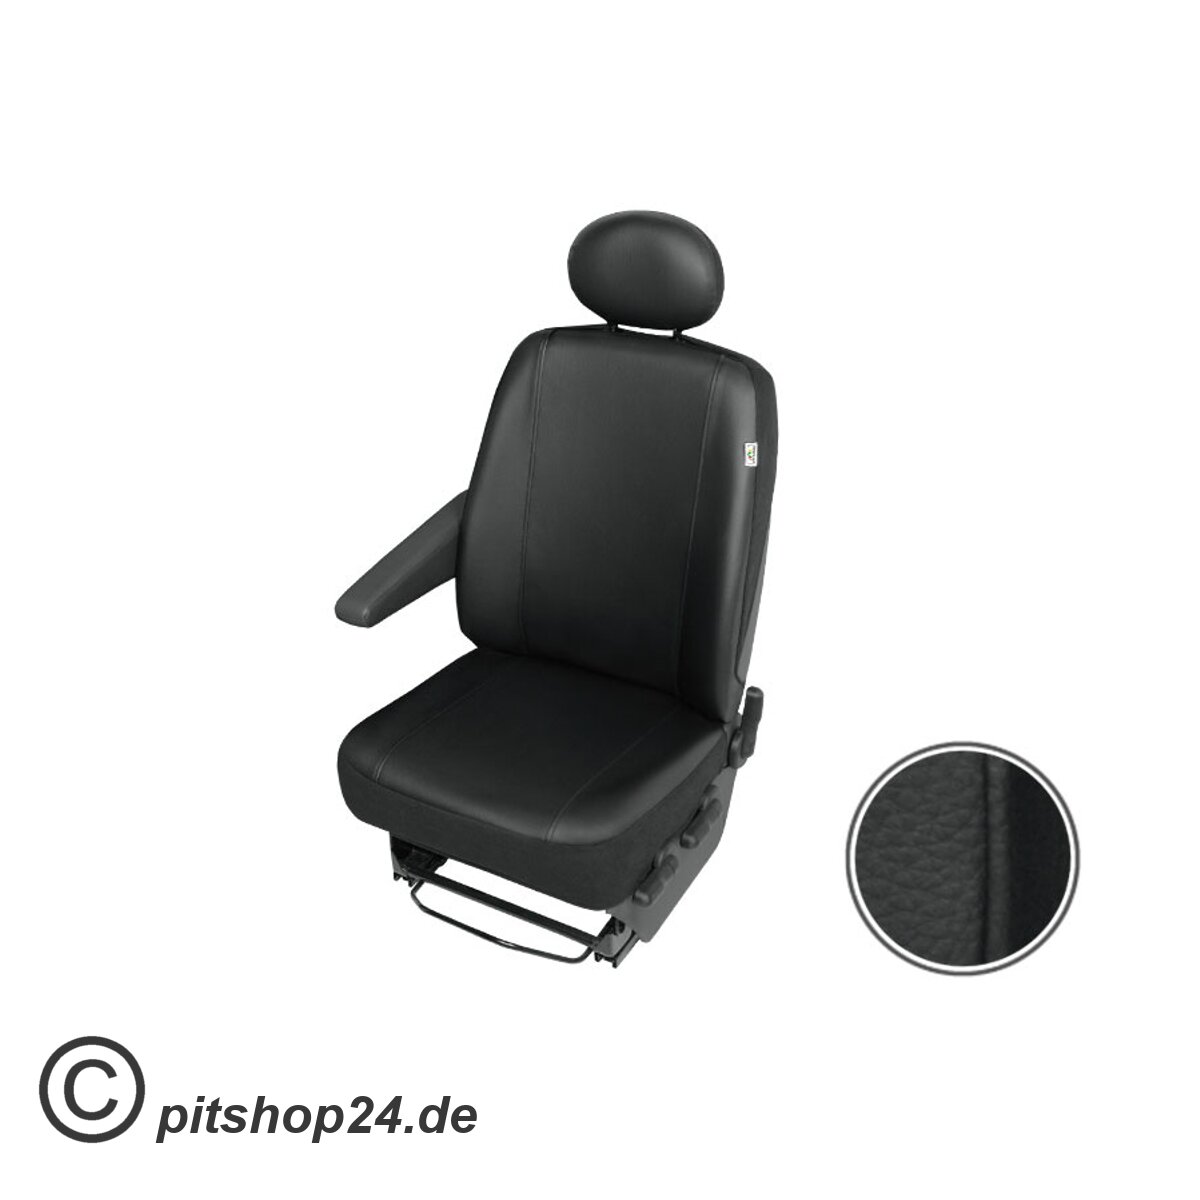 https://pitshop24.de/media/image/product/403/lg/ford-transit-kunstleder-einzelsitzbezug-fuer-den-fahrersitz-robuste-und-pflegeleichte-kunstleder-im-set-kopfstuetze-schutzbezug.jpg